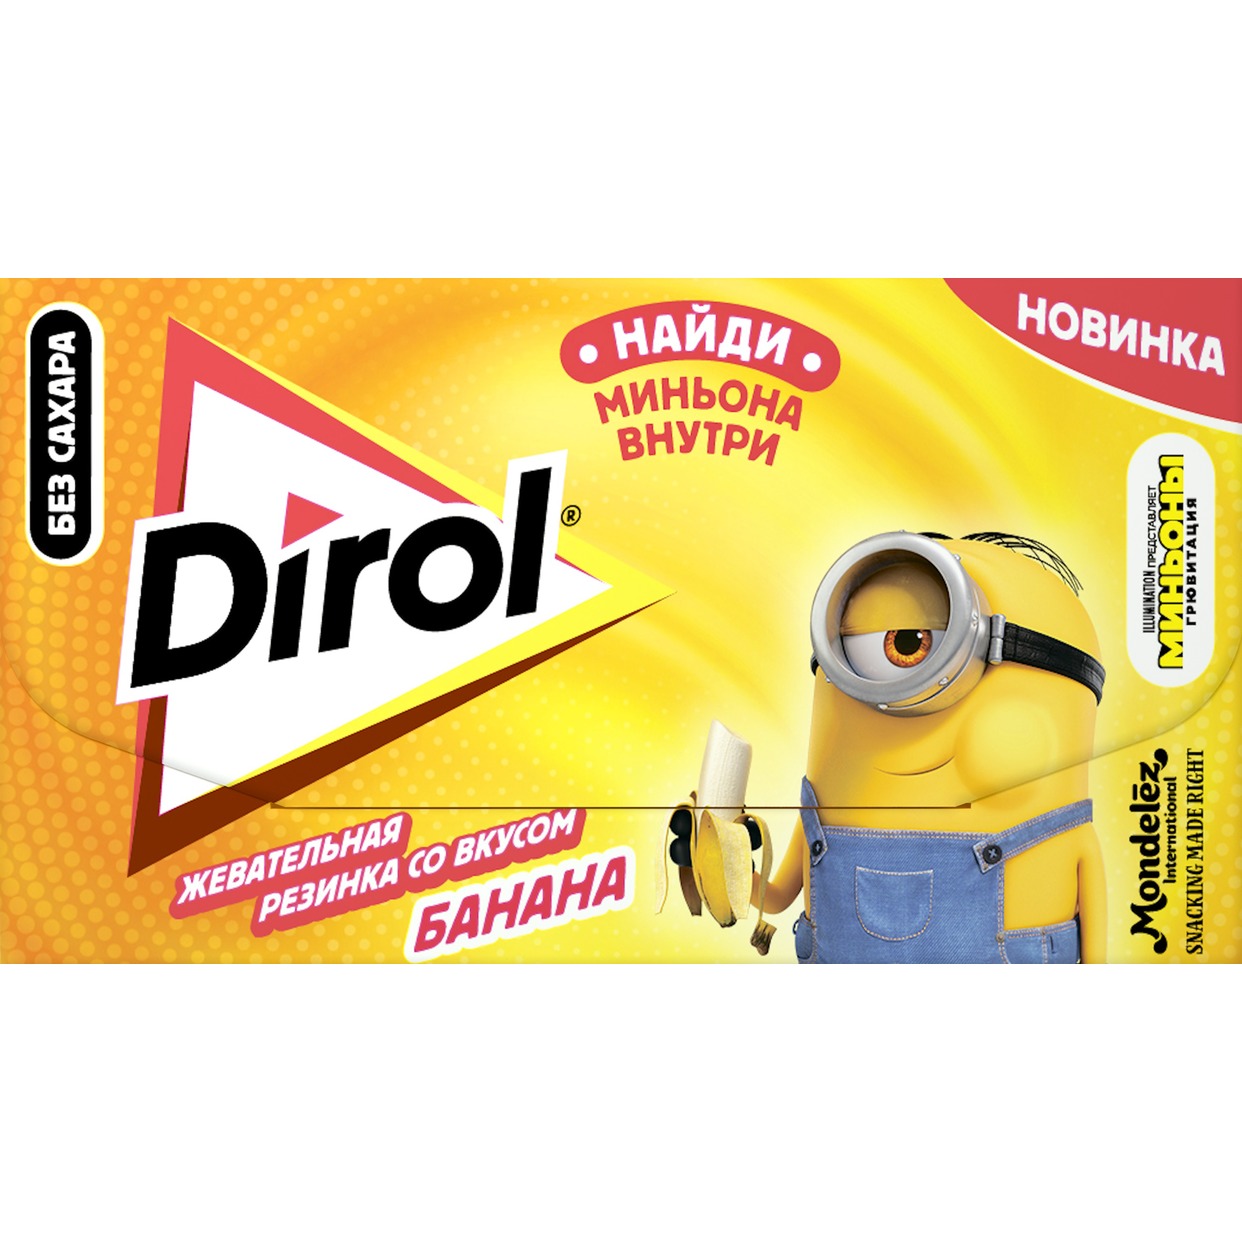 Dirol - жевательная резинка в пластинках без сахара со вкусом банана, 13.5г по акции в Пятерочке